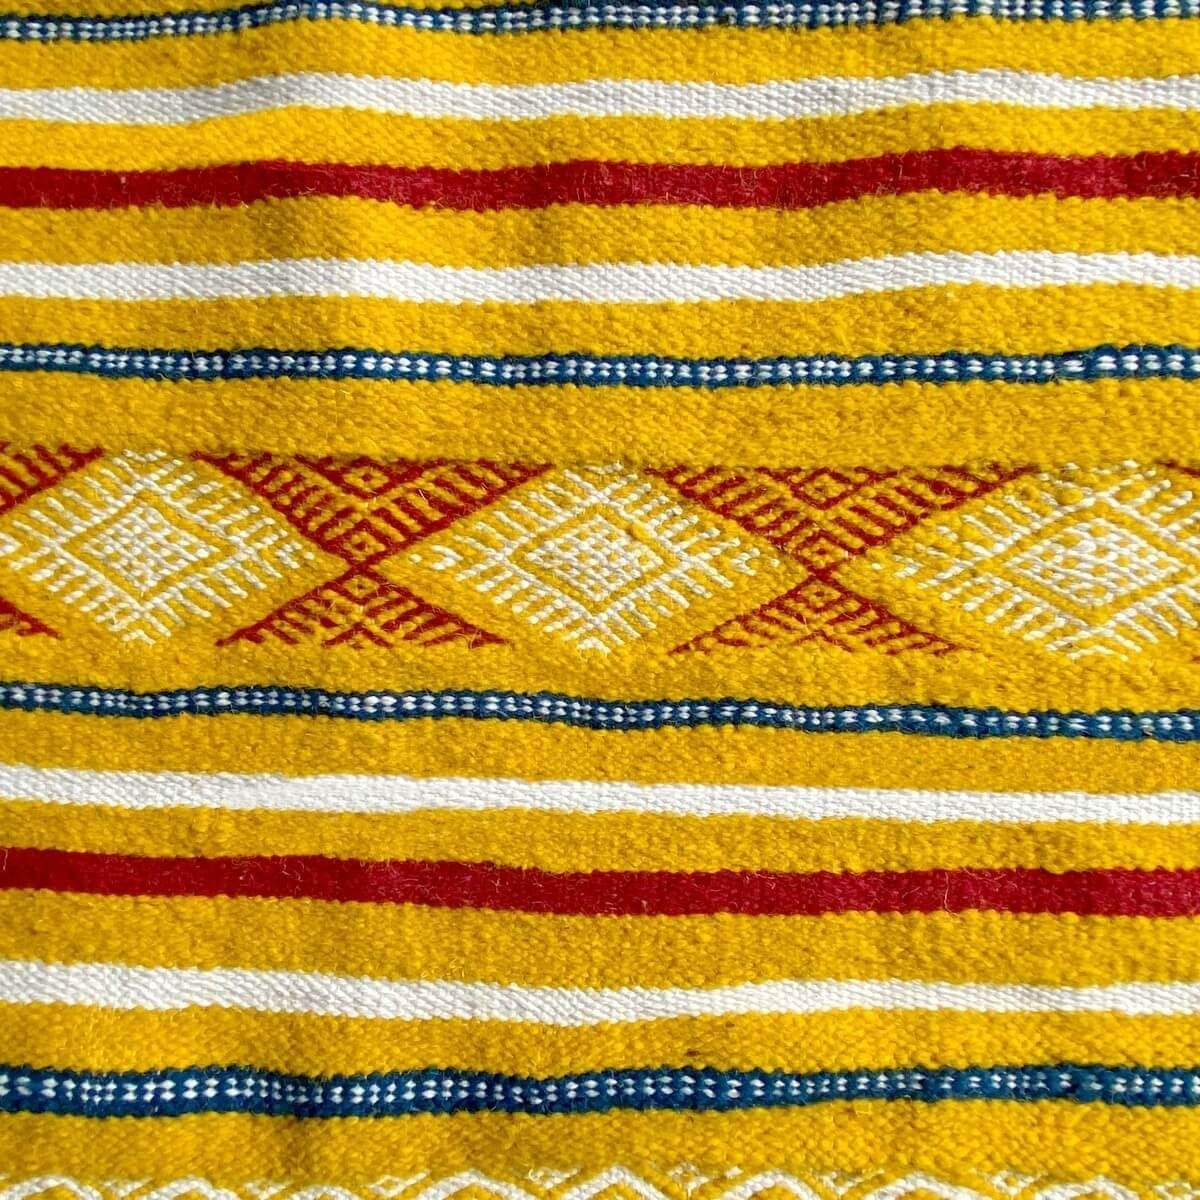 Berber Teppich Teppich Kelim Sahraoui 144x258 Gelb/Weiss (Handgewebt, Wolle) Tunesischer Kelim-Teppich im marokkanischen Stil. R